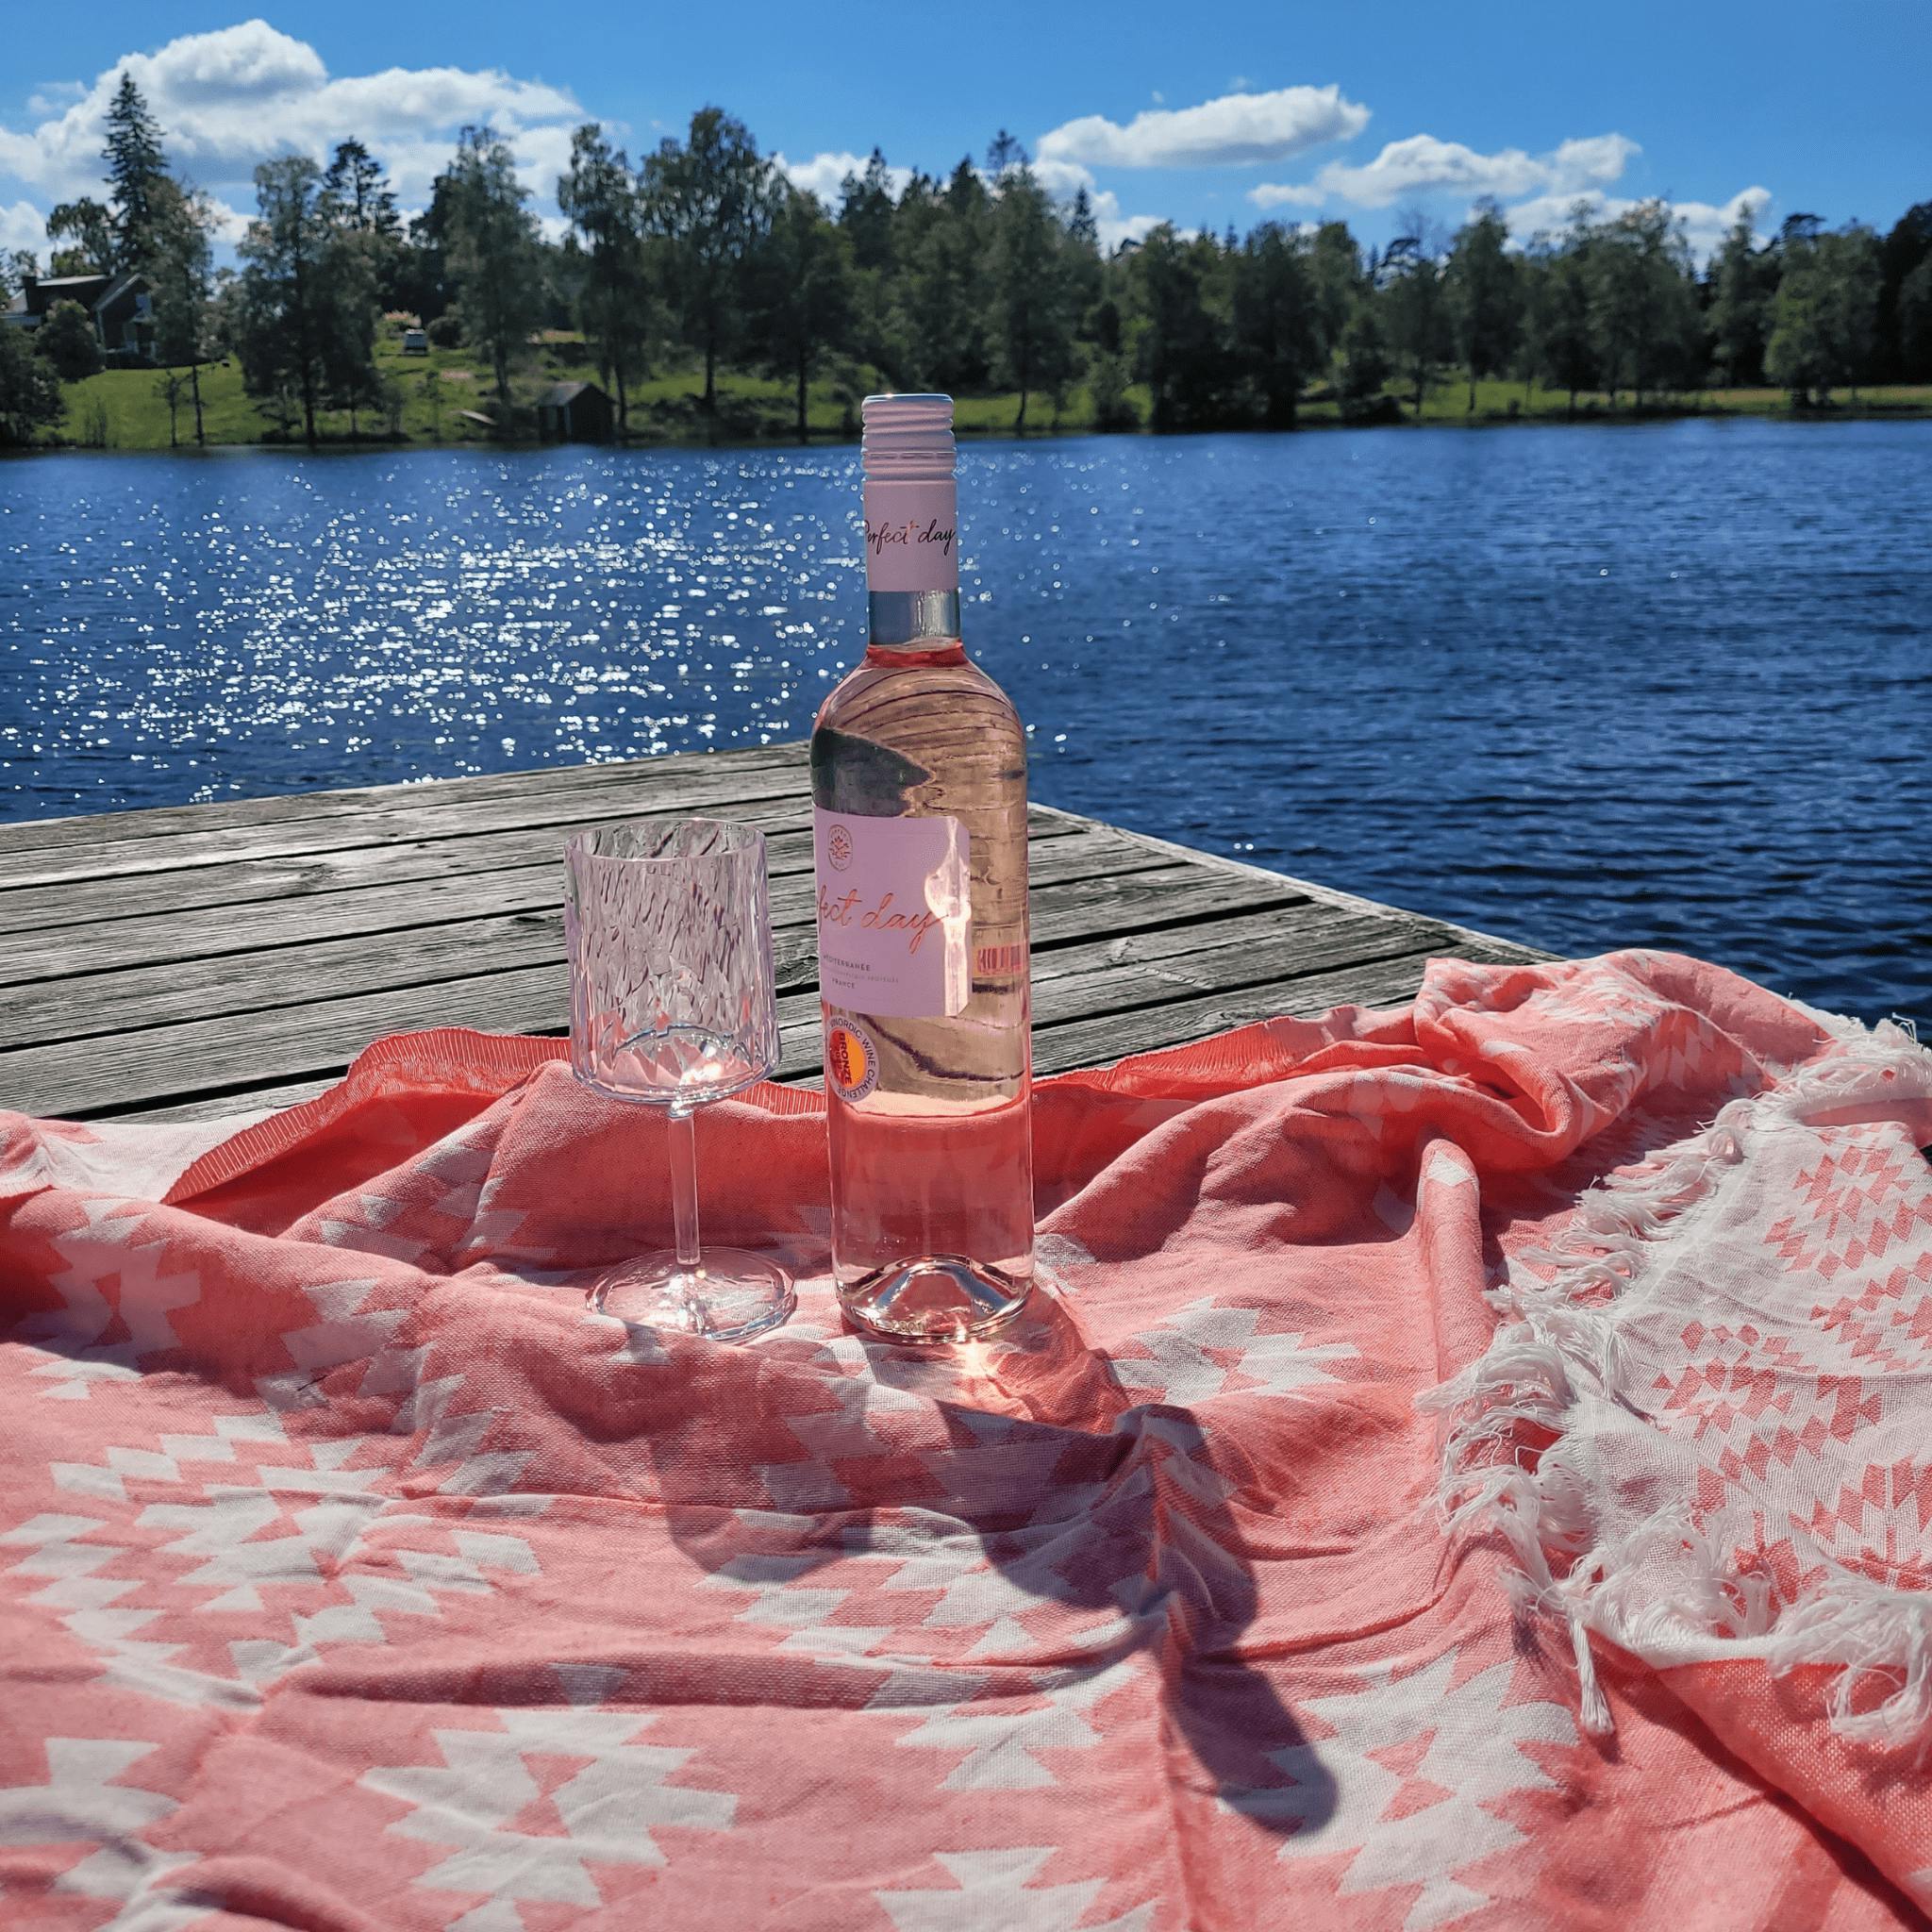 Hamam handduk, rosa, 190x100 cm